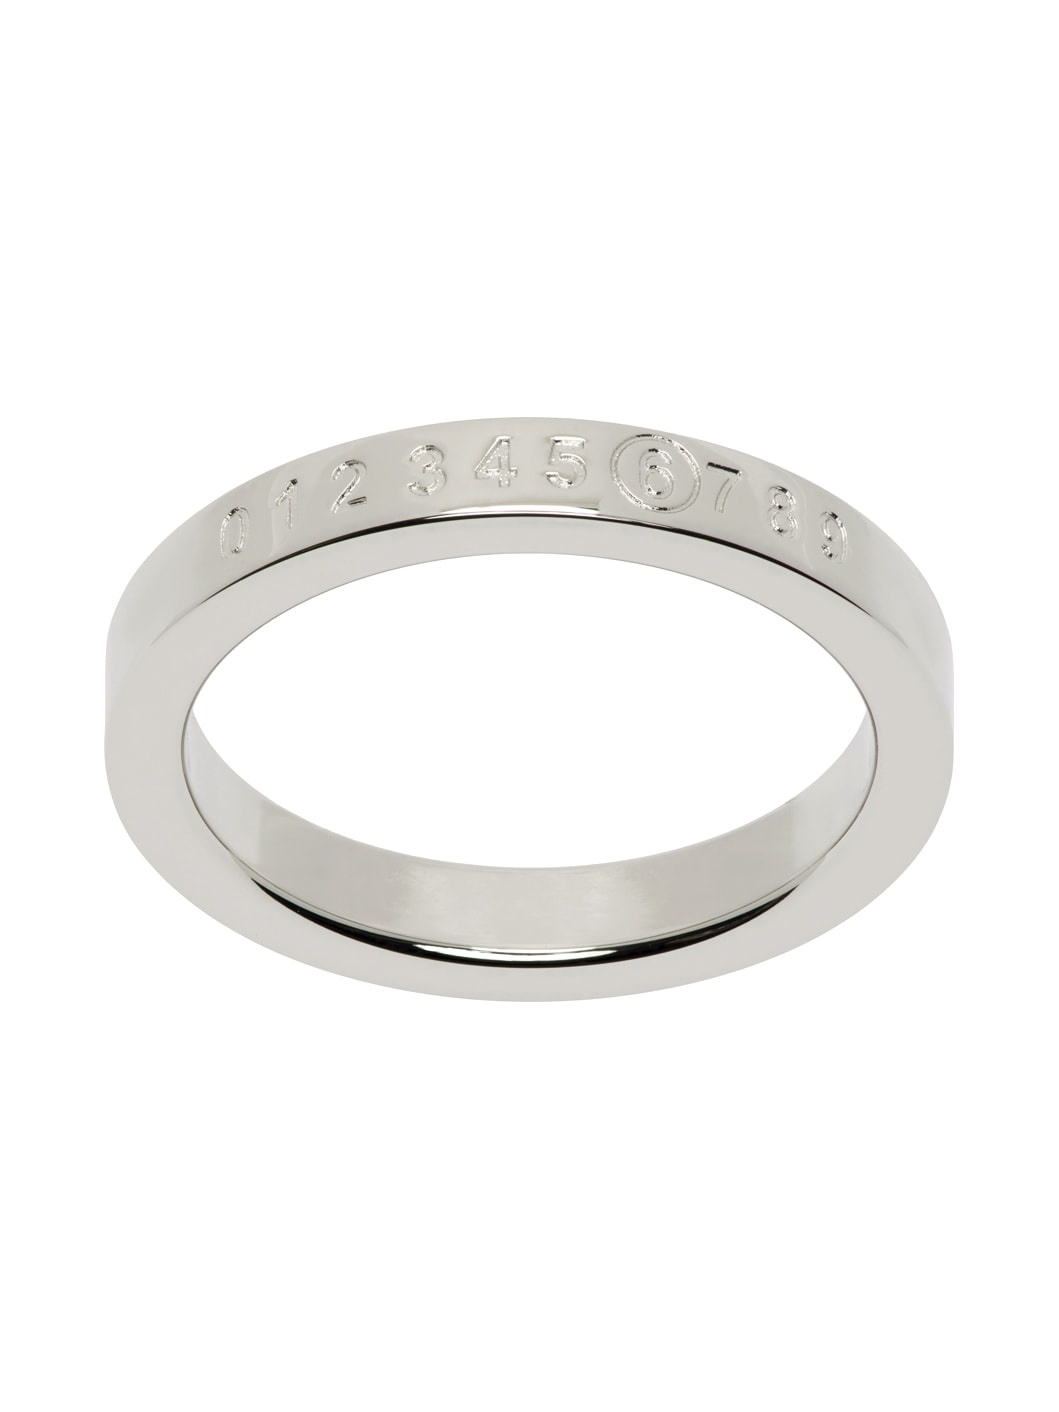 Silver Numeric Minimal Signature Ring - 1